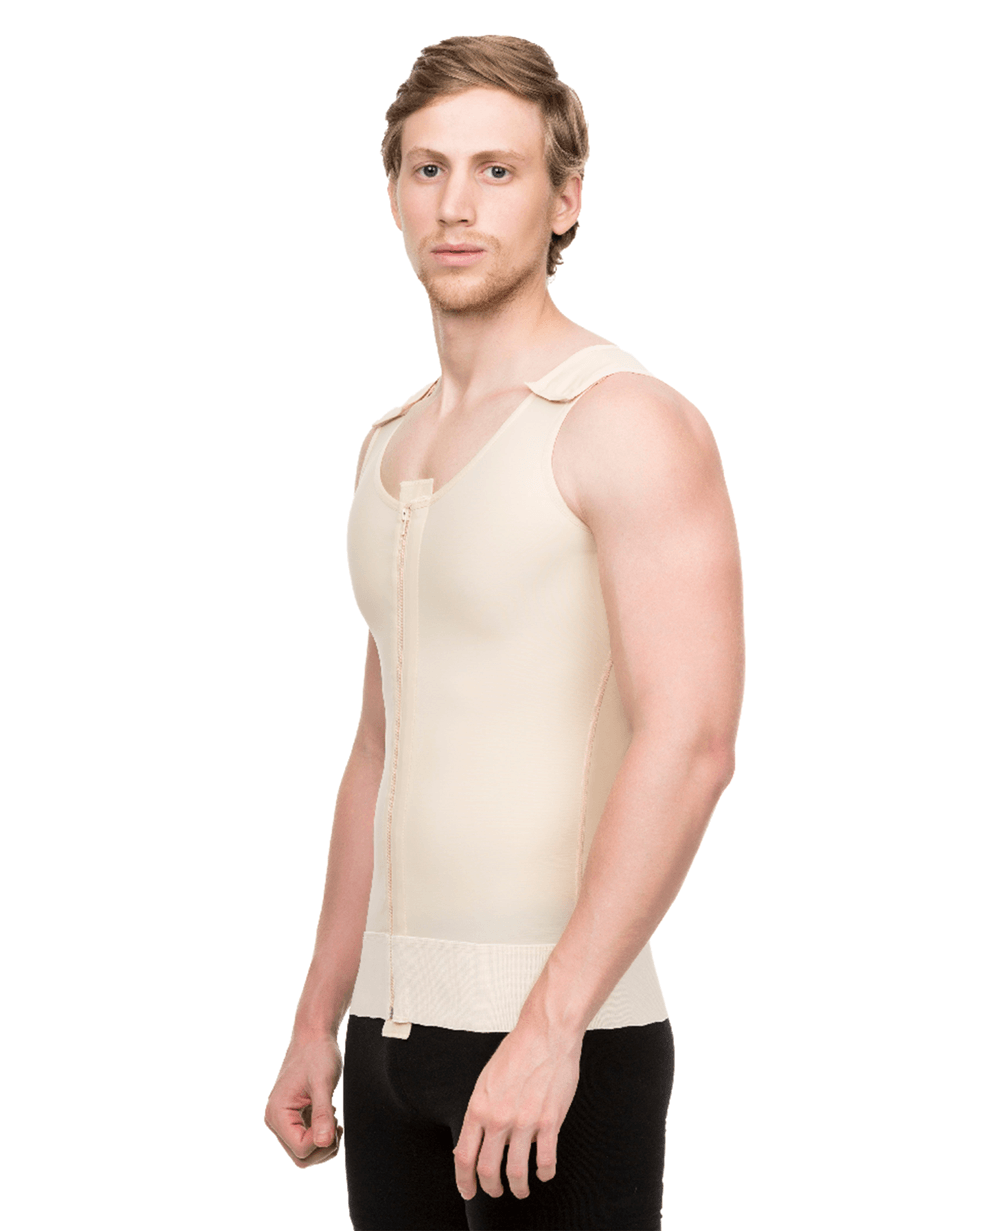 Isavela Male Compression Vest Short Length